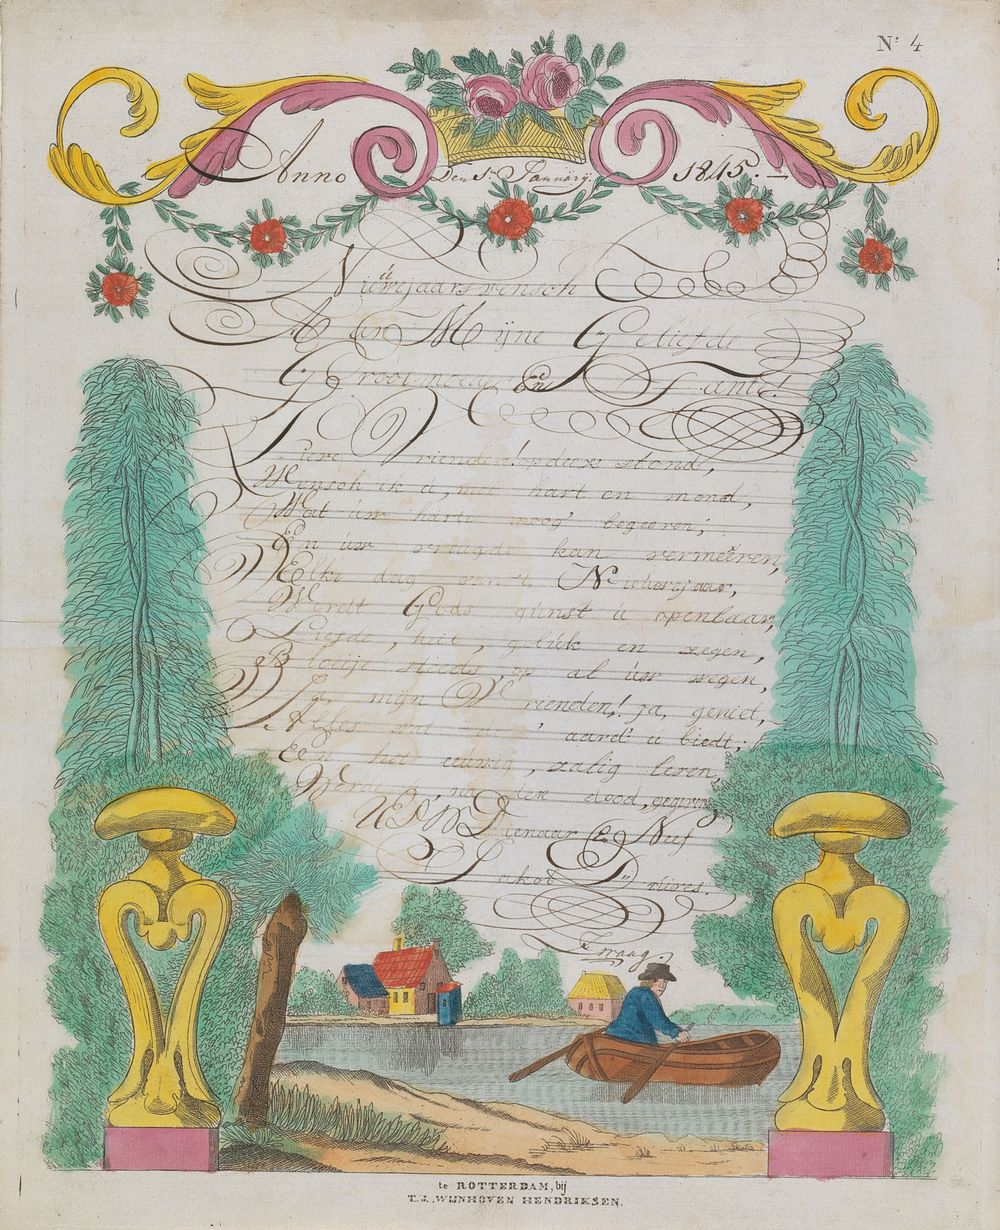 Wensbrief met man in roeiboot (1845) by Theodorus Johannes Wijnhoven Hendriksen and anonymous